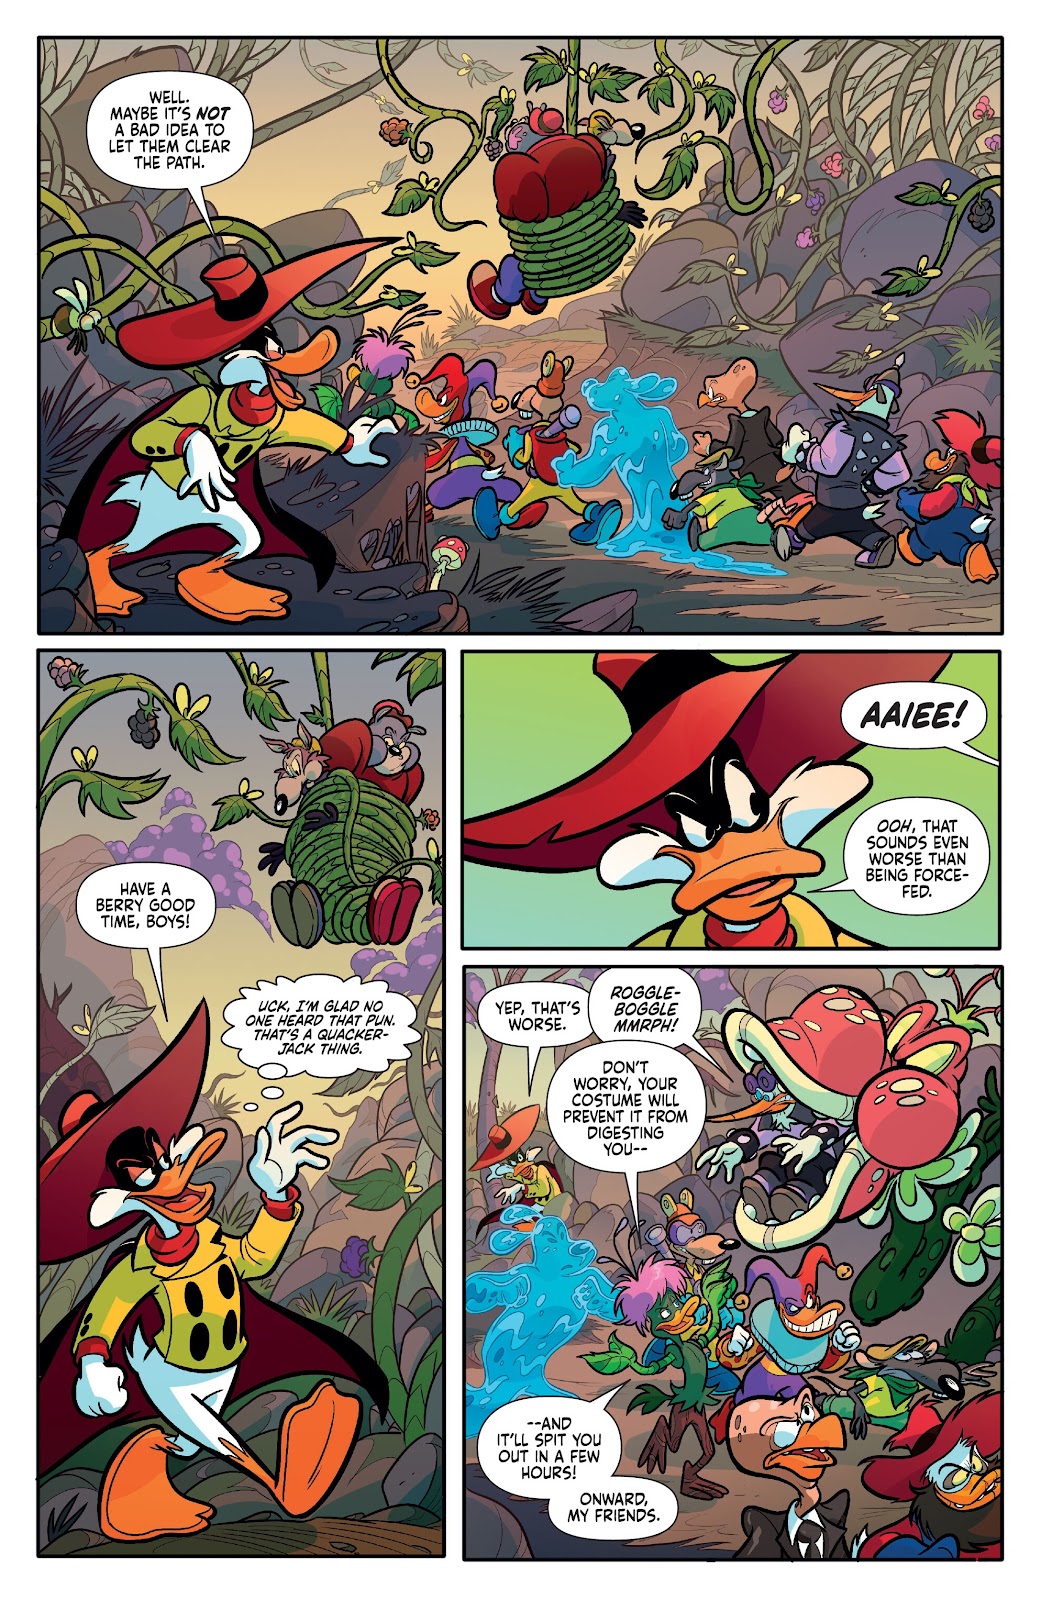 Darkwing Duck: Negaduck issue 3 - Page 15